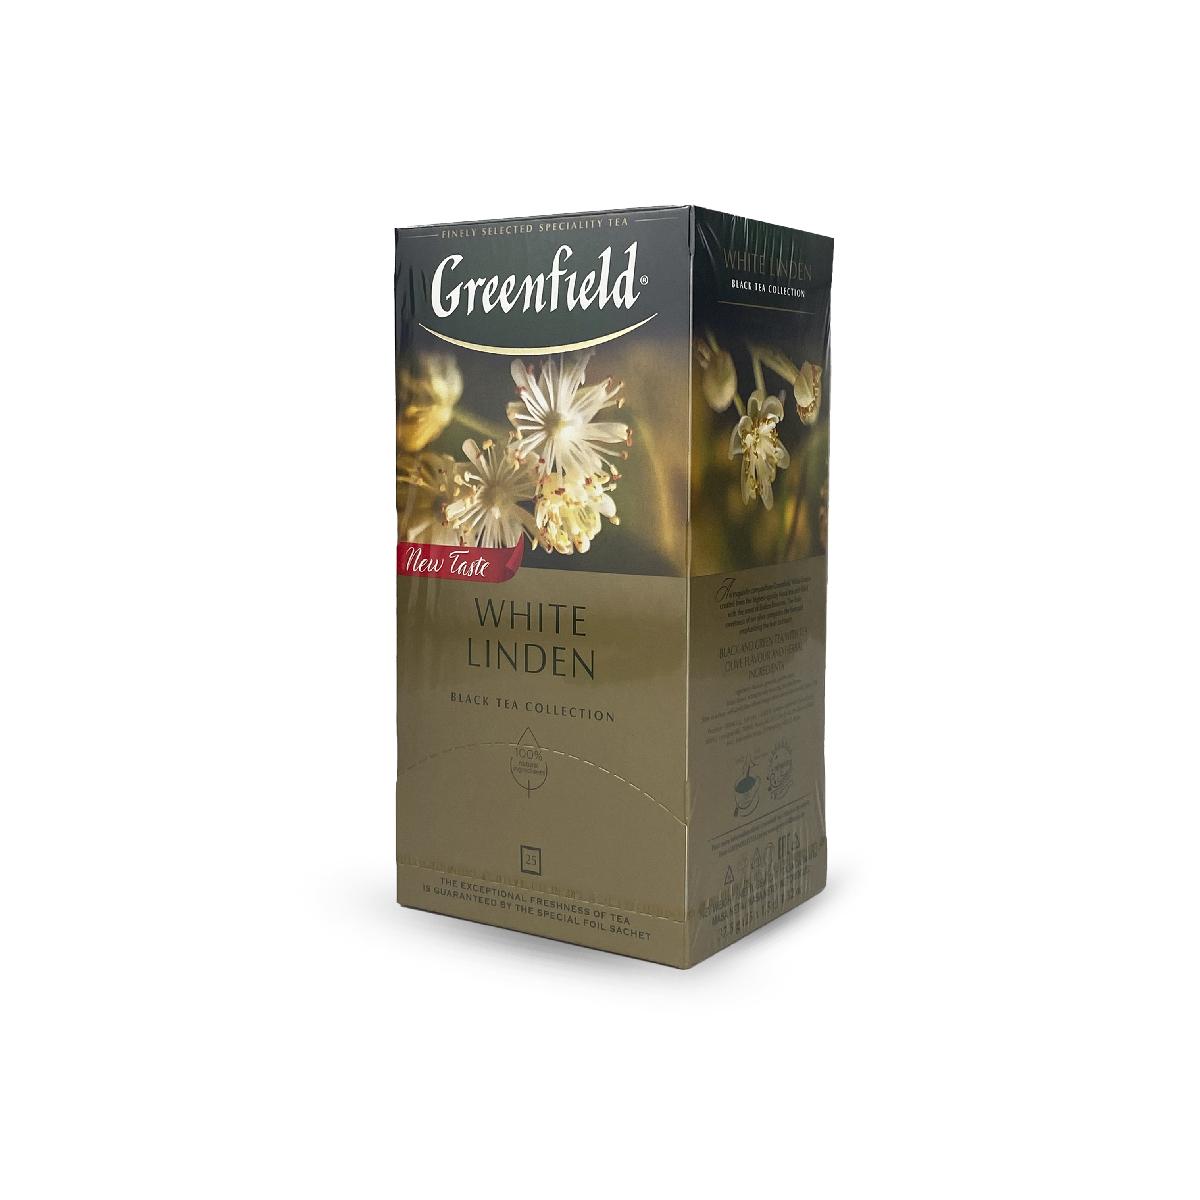 Чай Гринфилд 25 пак White linden жасмин-липа (10)